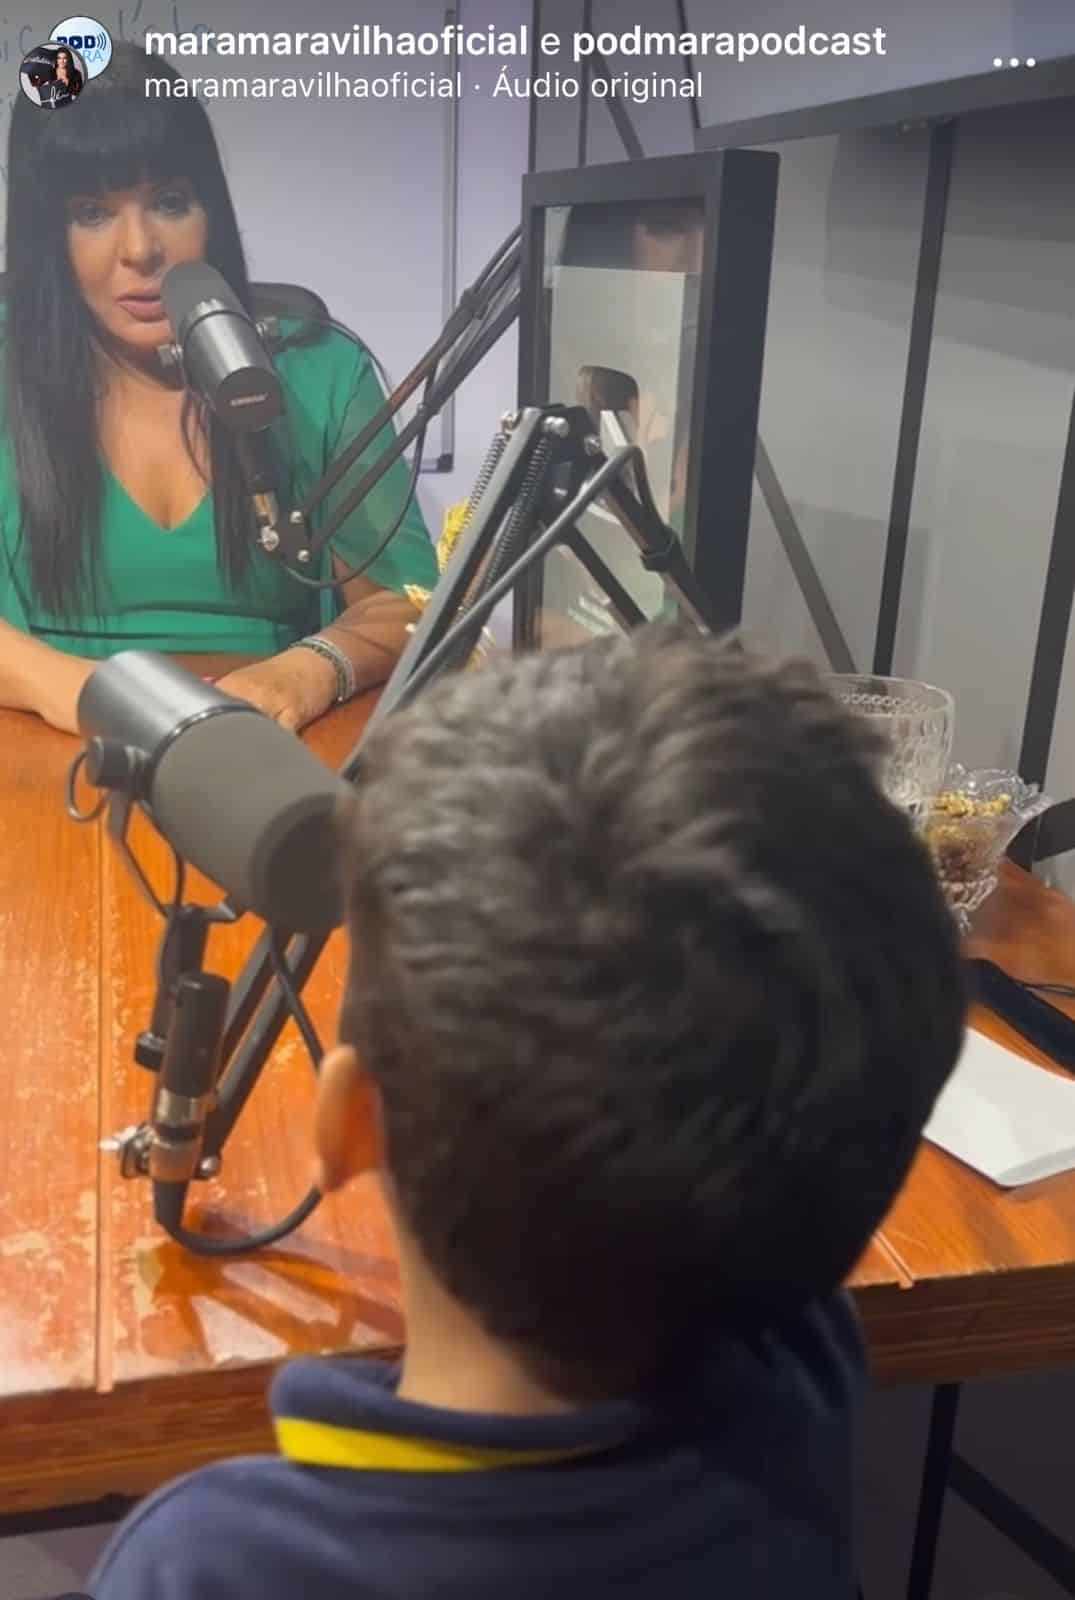 Filho de Mara Maravilha surge em podcast com a mãe